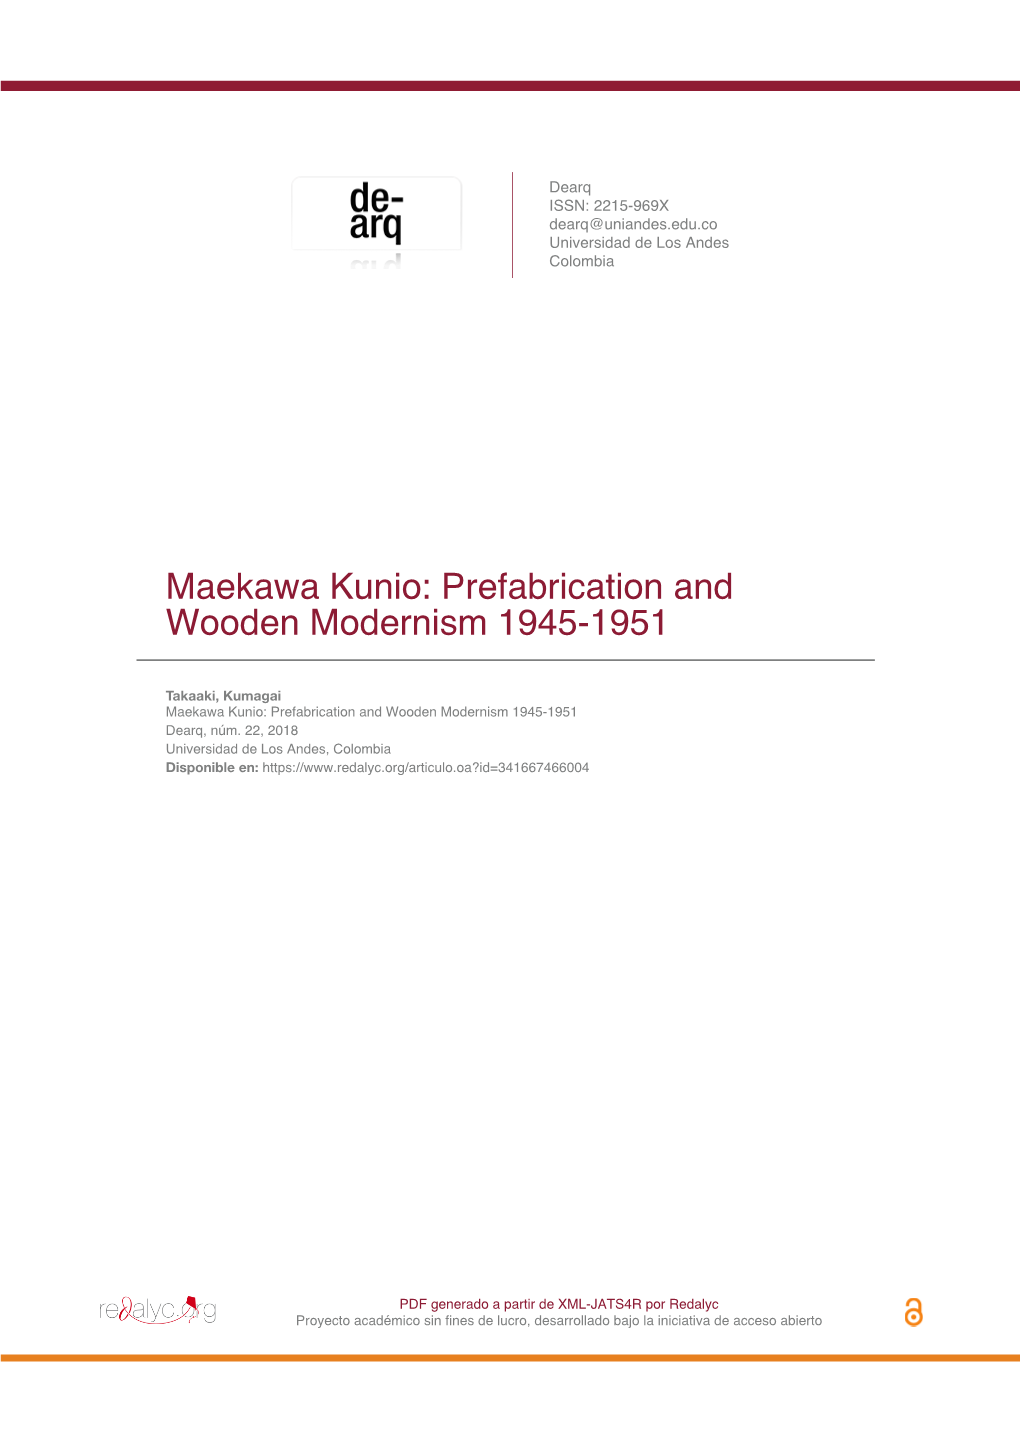 Maekawa Kunio: Prefabrication and Wooden Modernism 1945-1951